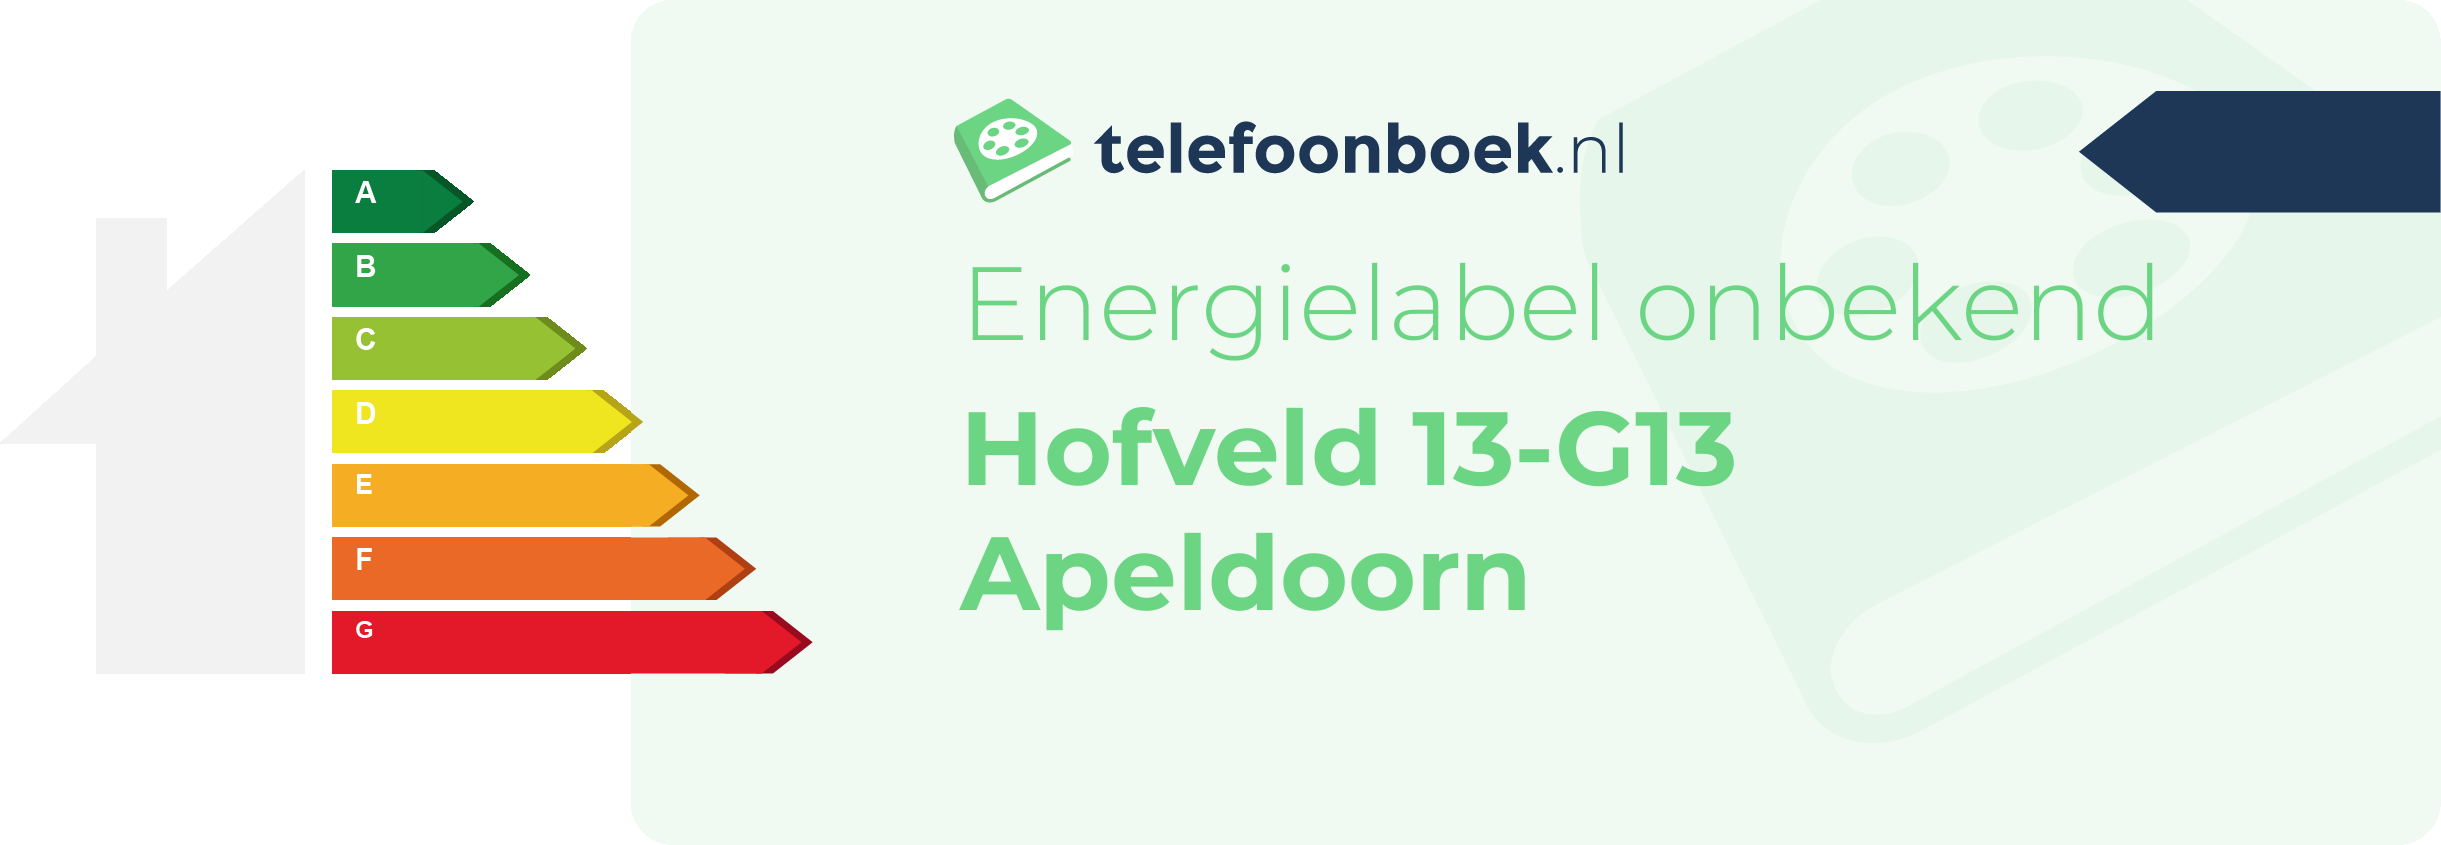 Energielabel Hofveld 13-G13 Apeldoorn